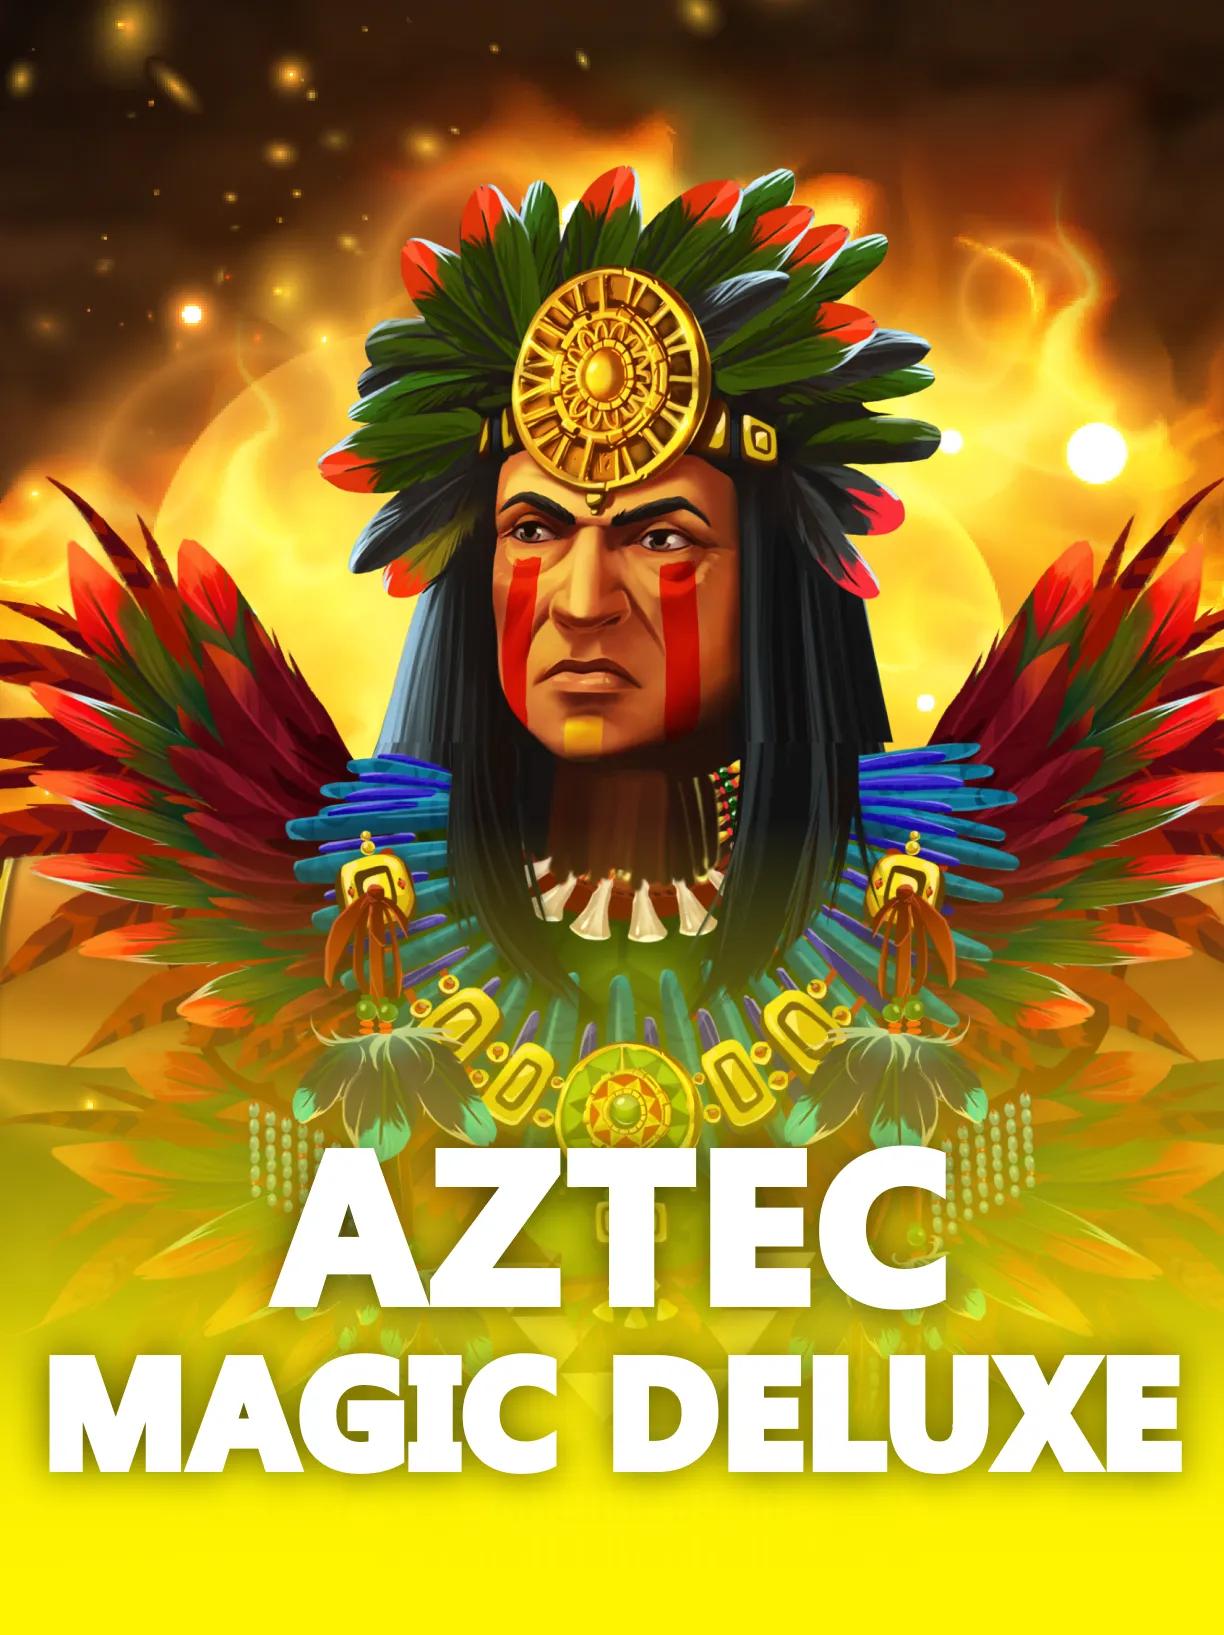 Aztec_Magic_Deluxe_square.webp